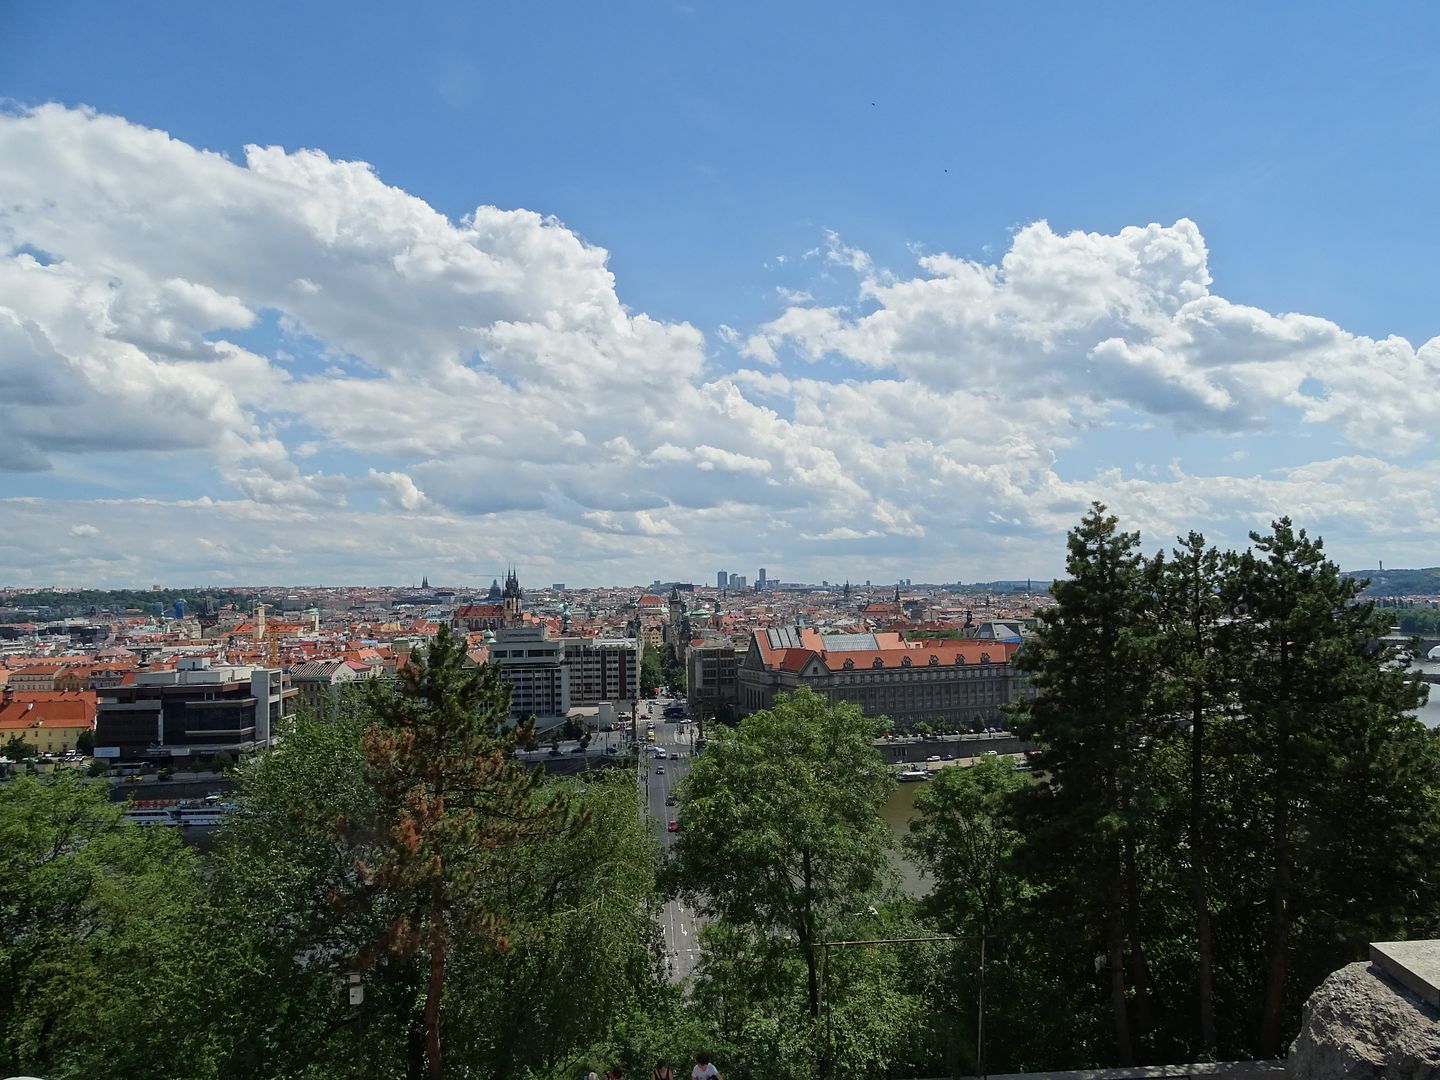 7 días en Praga con escursiones a Dresde (Alemania),Karlovy Vary y Terezin (E.C) - Blogs of Czech Republic - Día 3: Viernes 1 de Julio de 2016 (23)